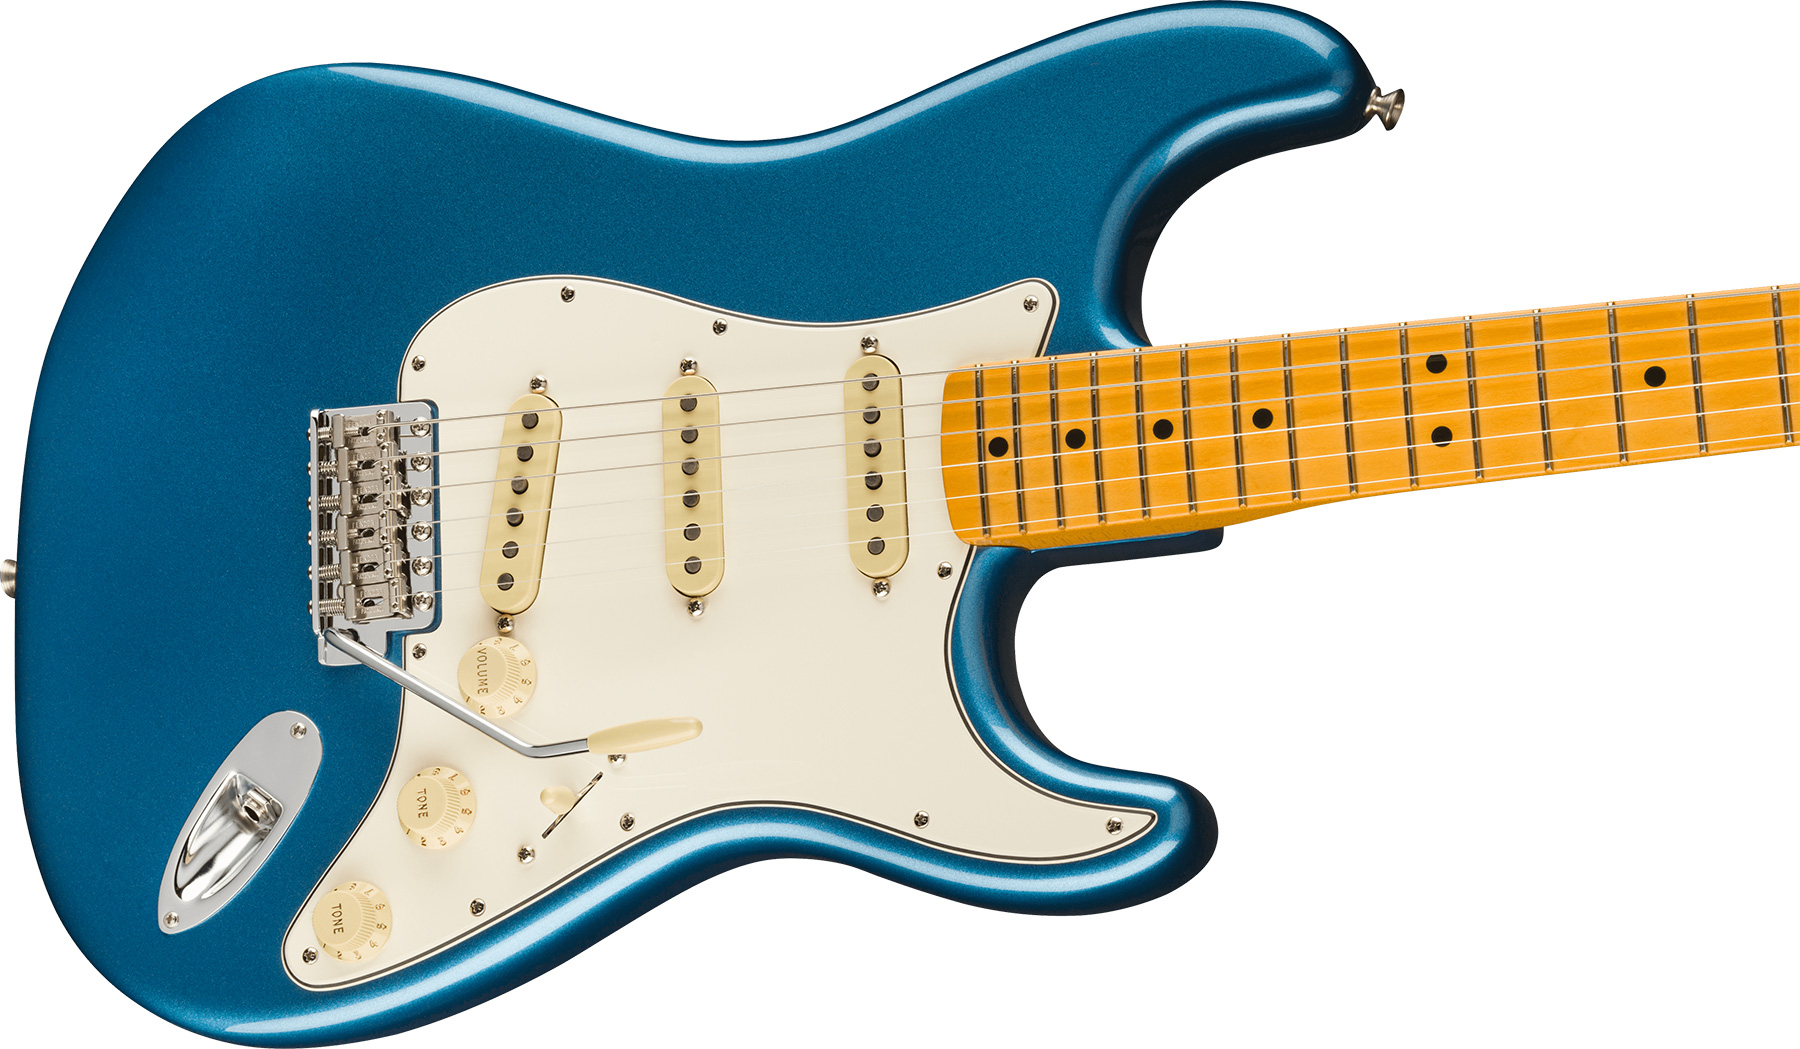 Fender Strat 1973 American Vintage Ii Usa 3s Trem Mn - Lake Placid Blue - Guitarra eléctrica con forma de str. - Variation 2